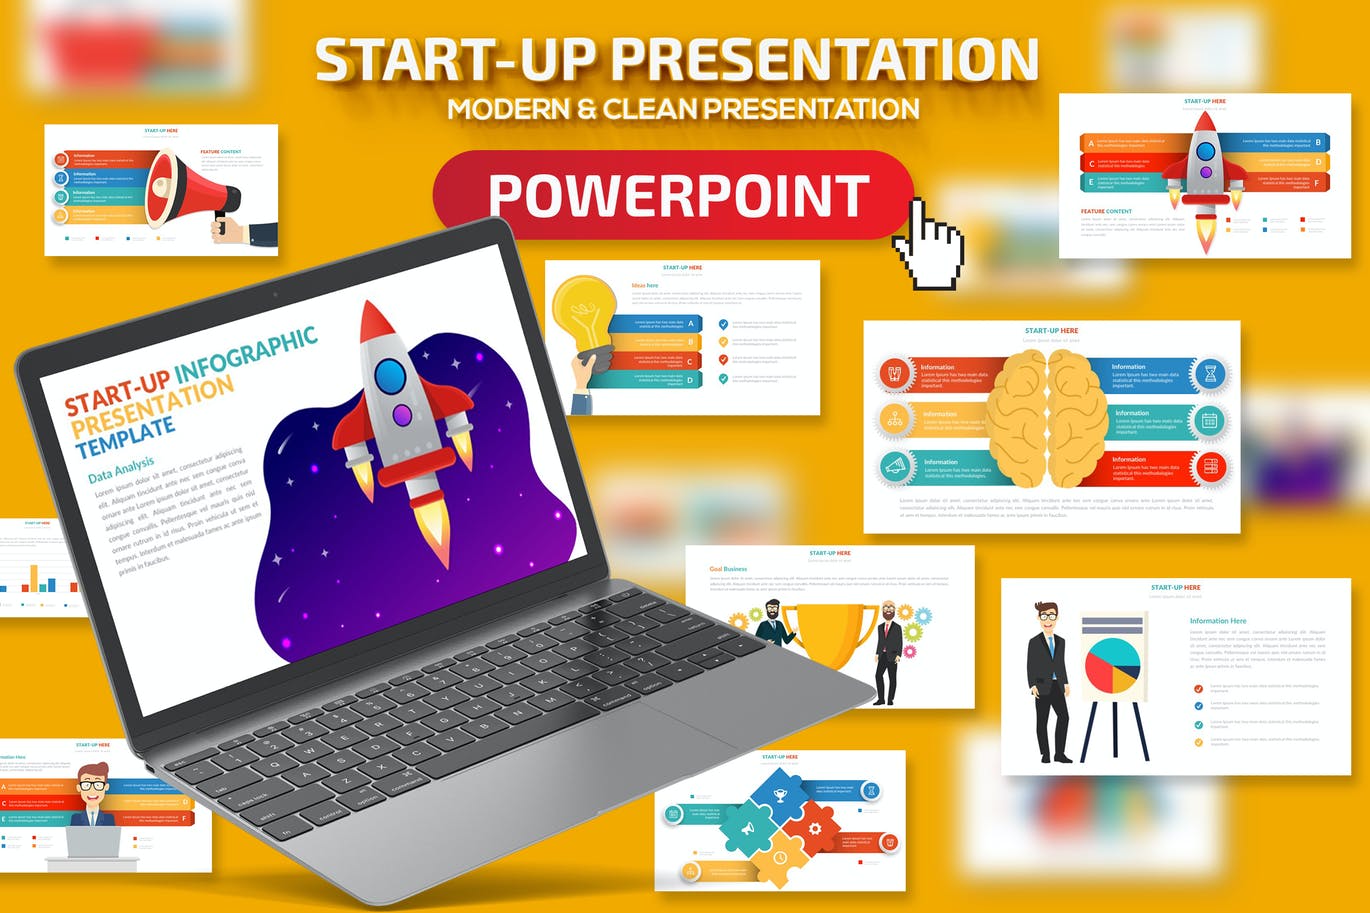 Start-up PowerPoint Presentation